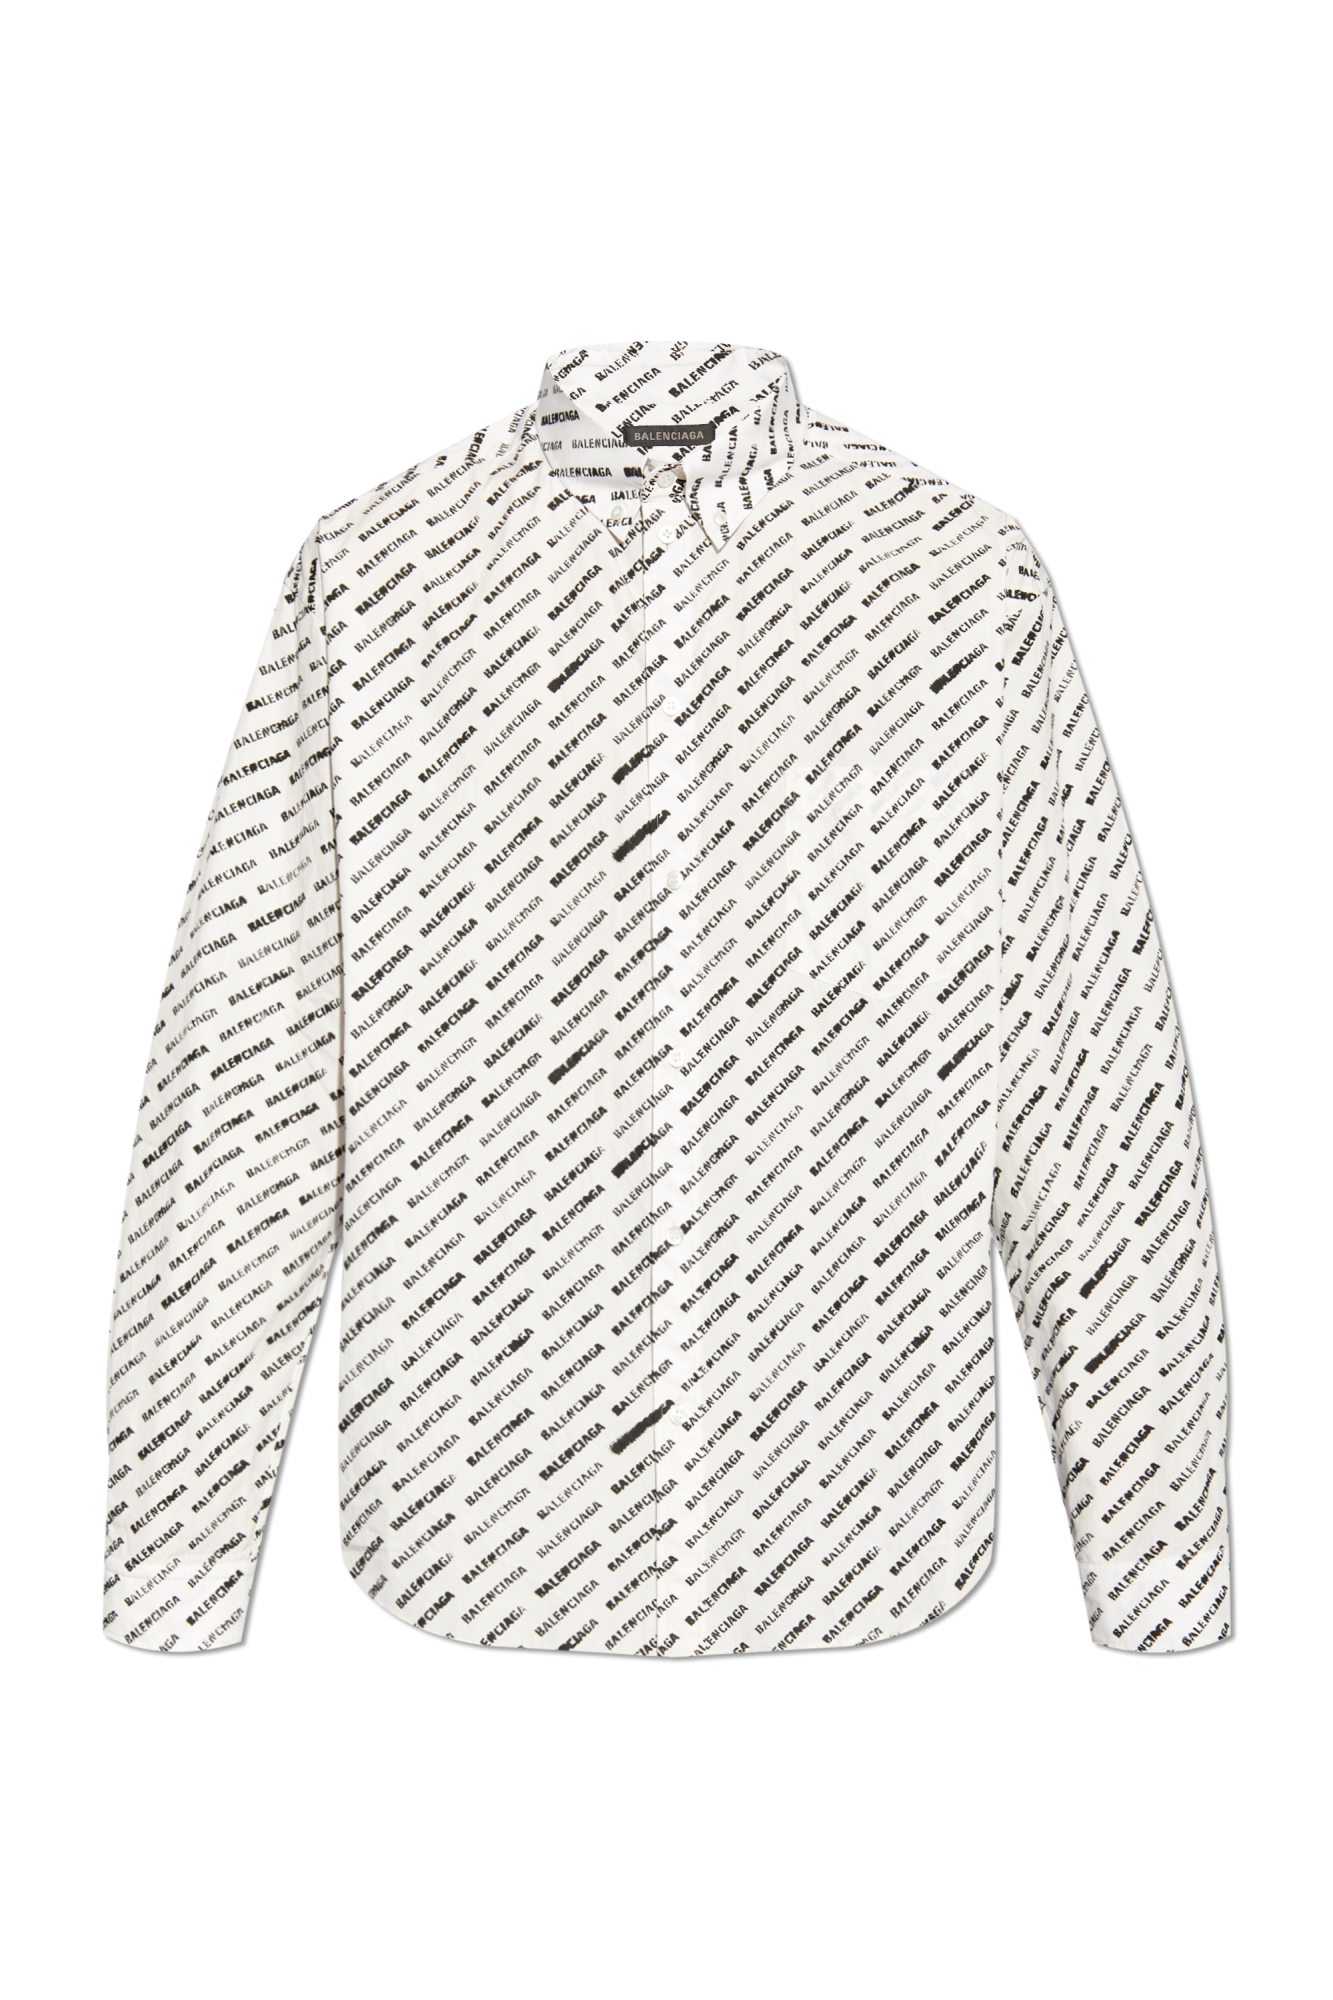 Balenciaga under shirt with logo